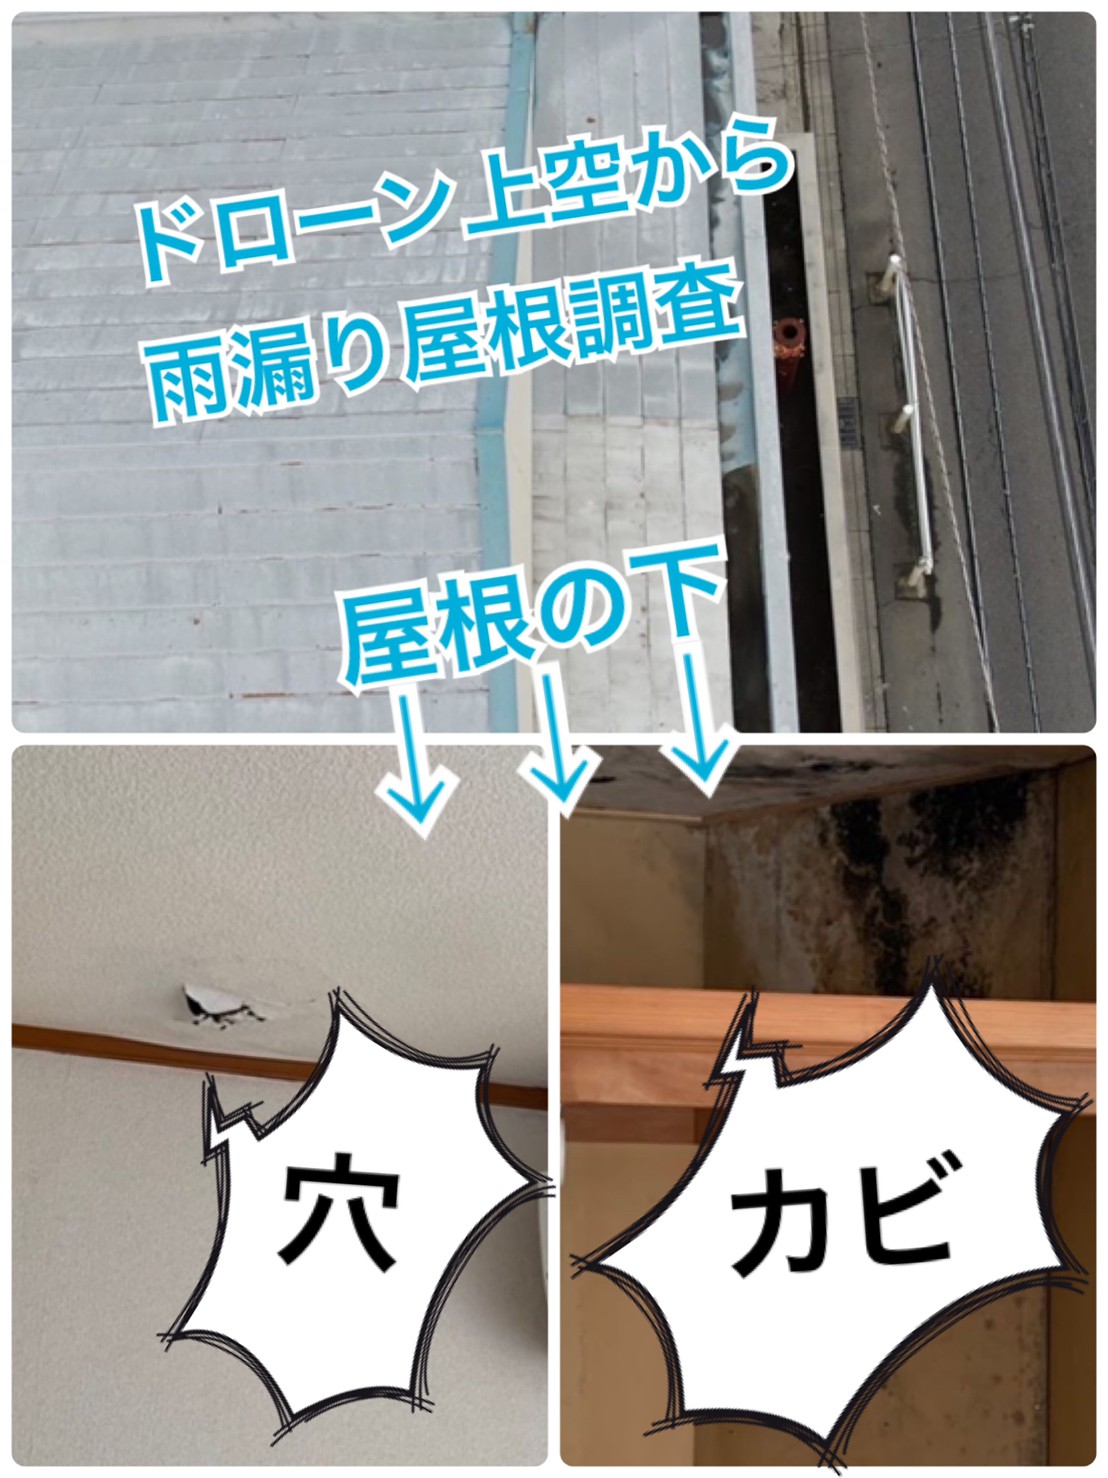 雨漏り屋根☔ドローン調査🔎